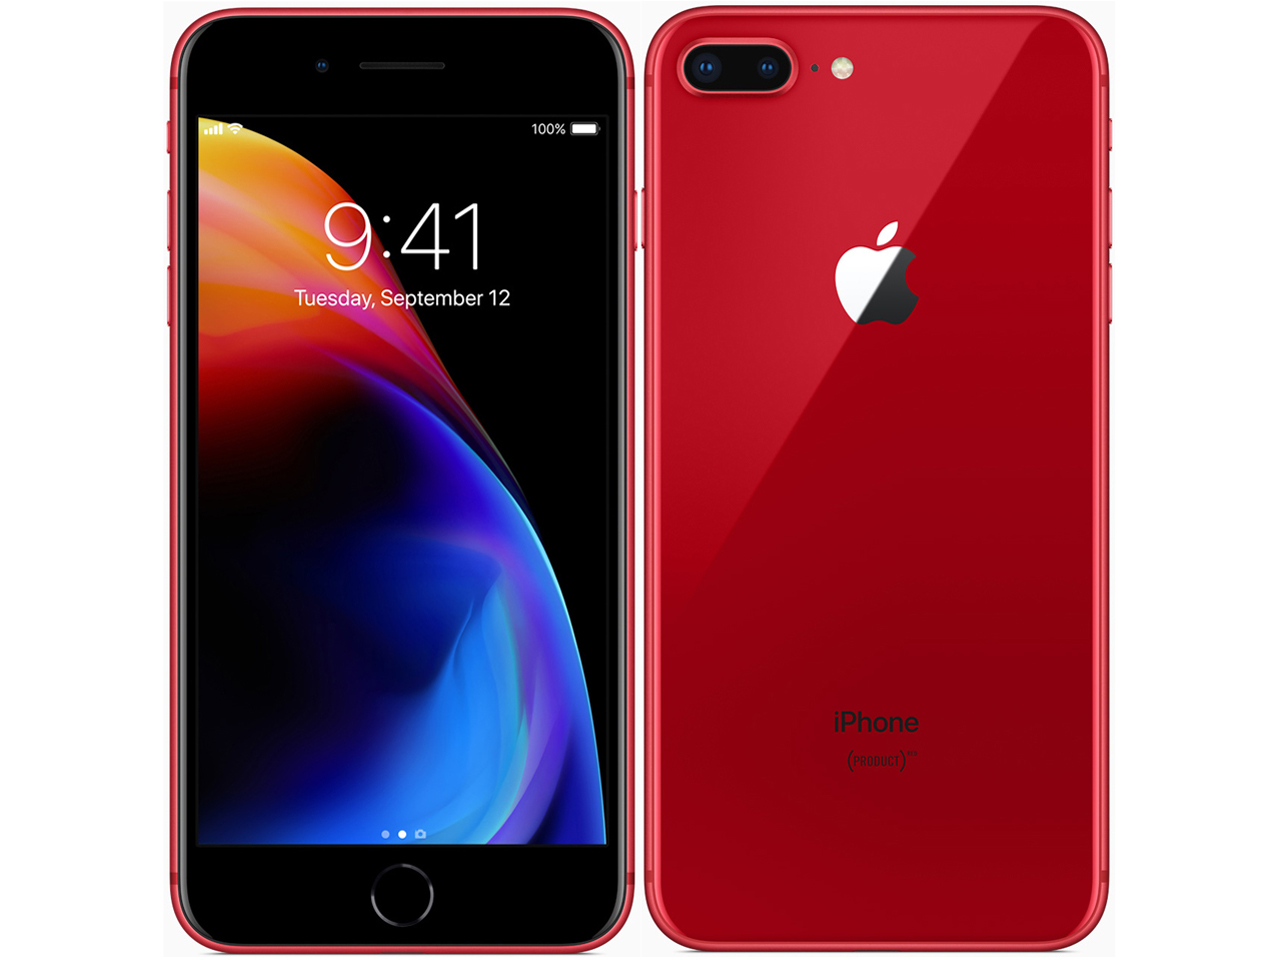 価格.com - iPhone 8 Plus (PRODUCT)RED Special Edition 64GB SIMフリー [レッド] の製品画像